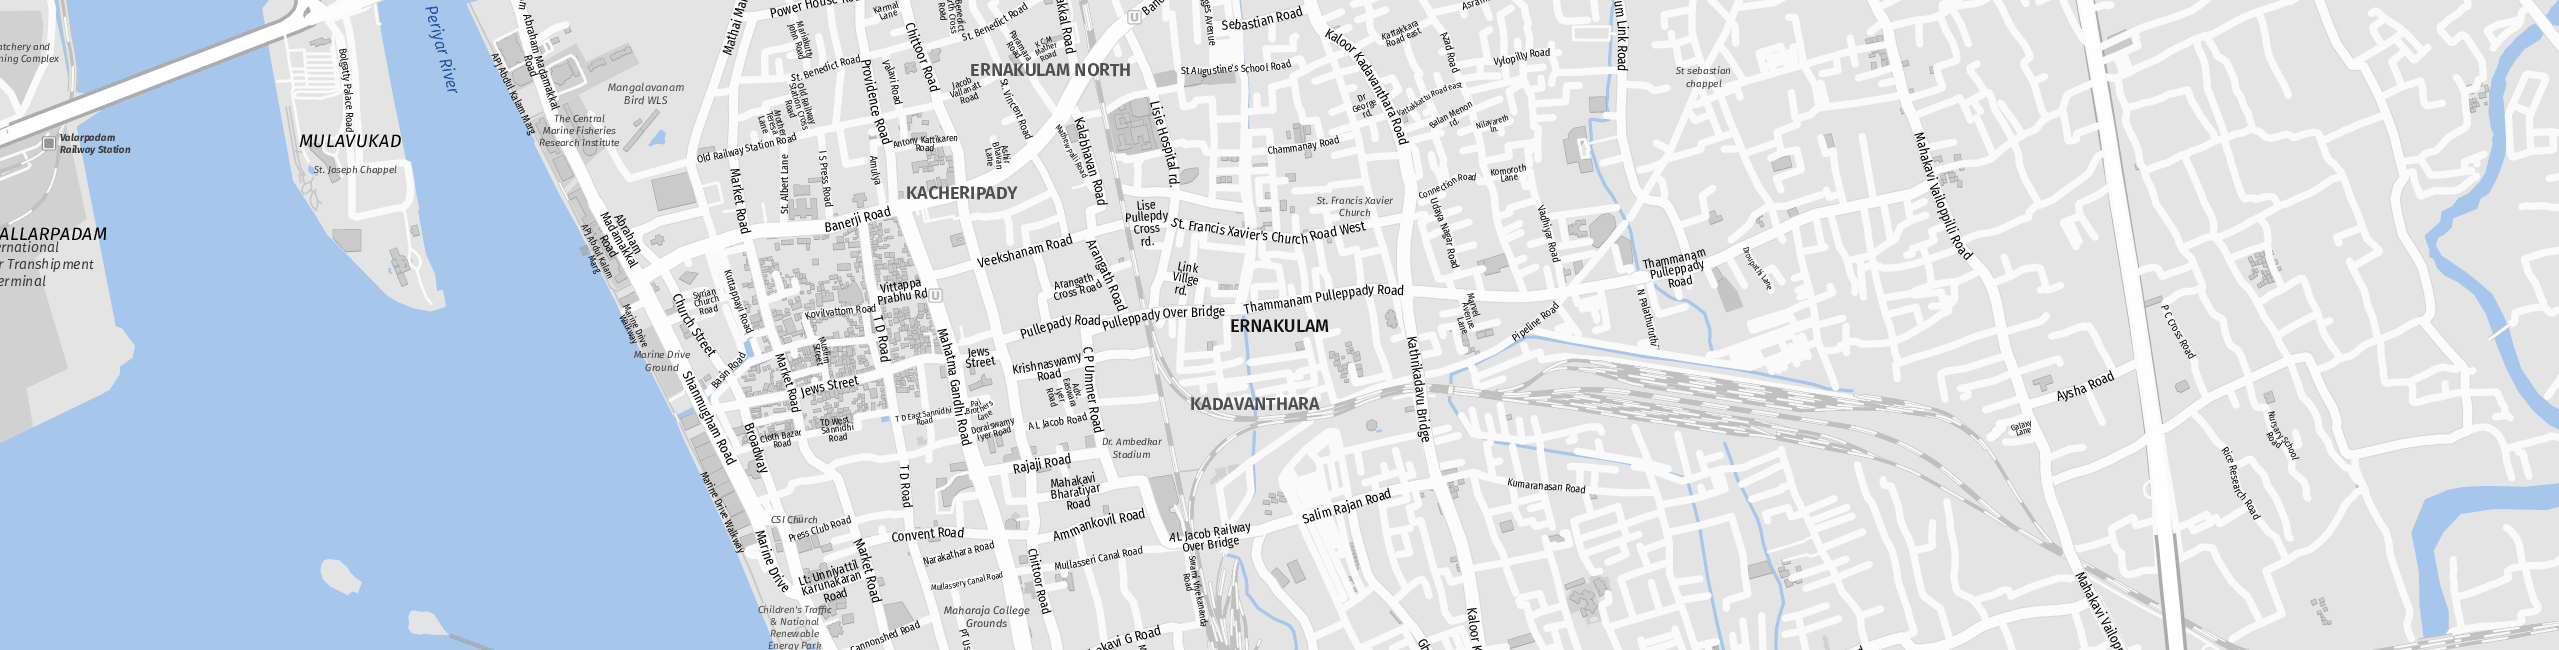 Stadtplan Ernakulam zum Downloaden.